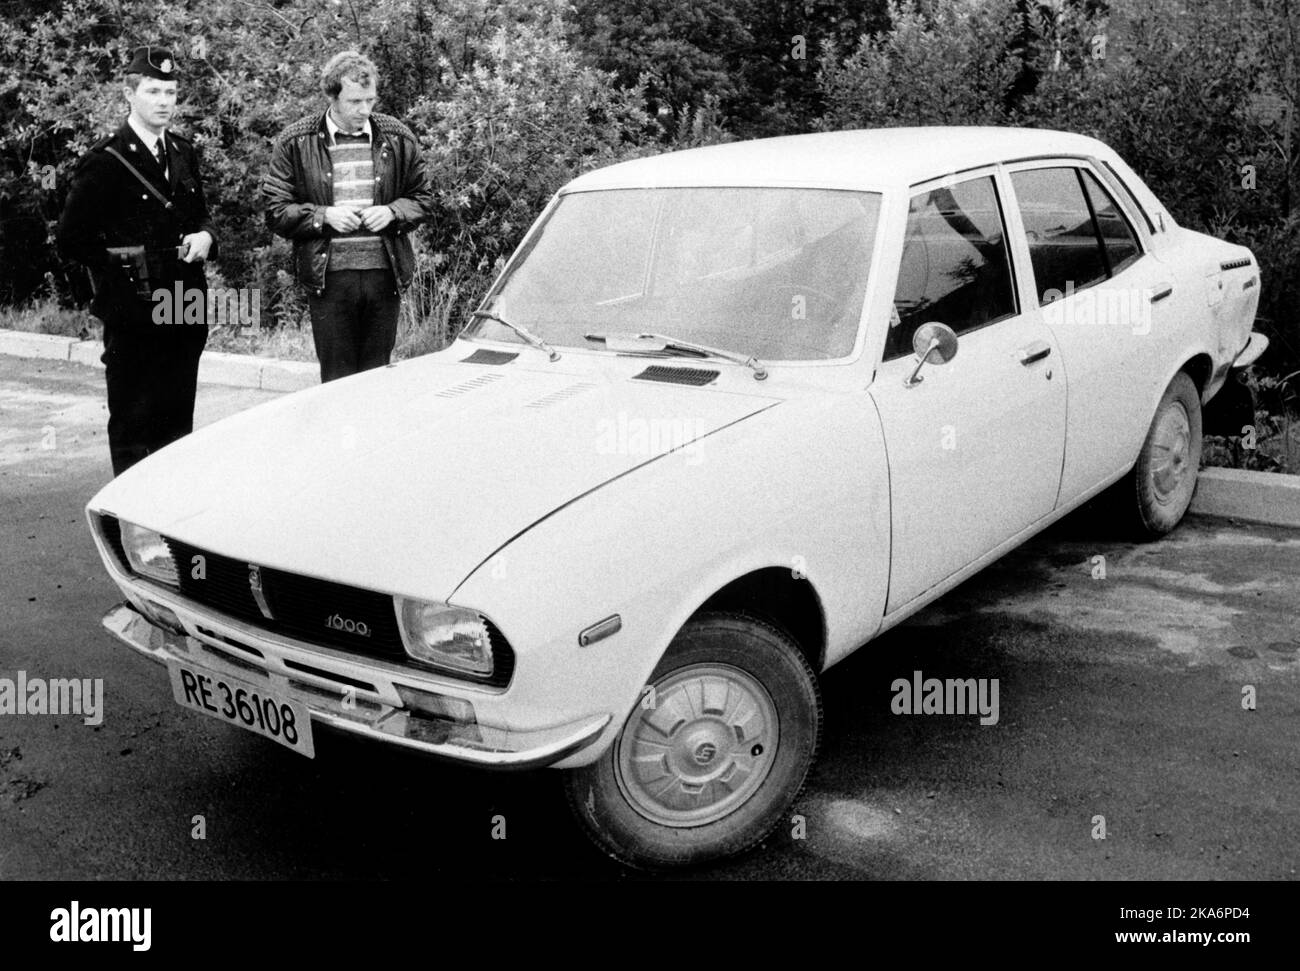 Das Bild zeigt das Auto, das von der israelischen Gruppe benutzt wurde, als Ahmed Bouchiki in Lillehammer 1973 getötet wurde. Foto: SCANPIX Arkiv: NTB Stockfoto